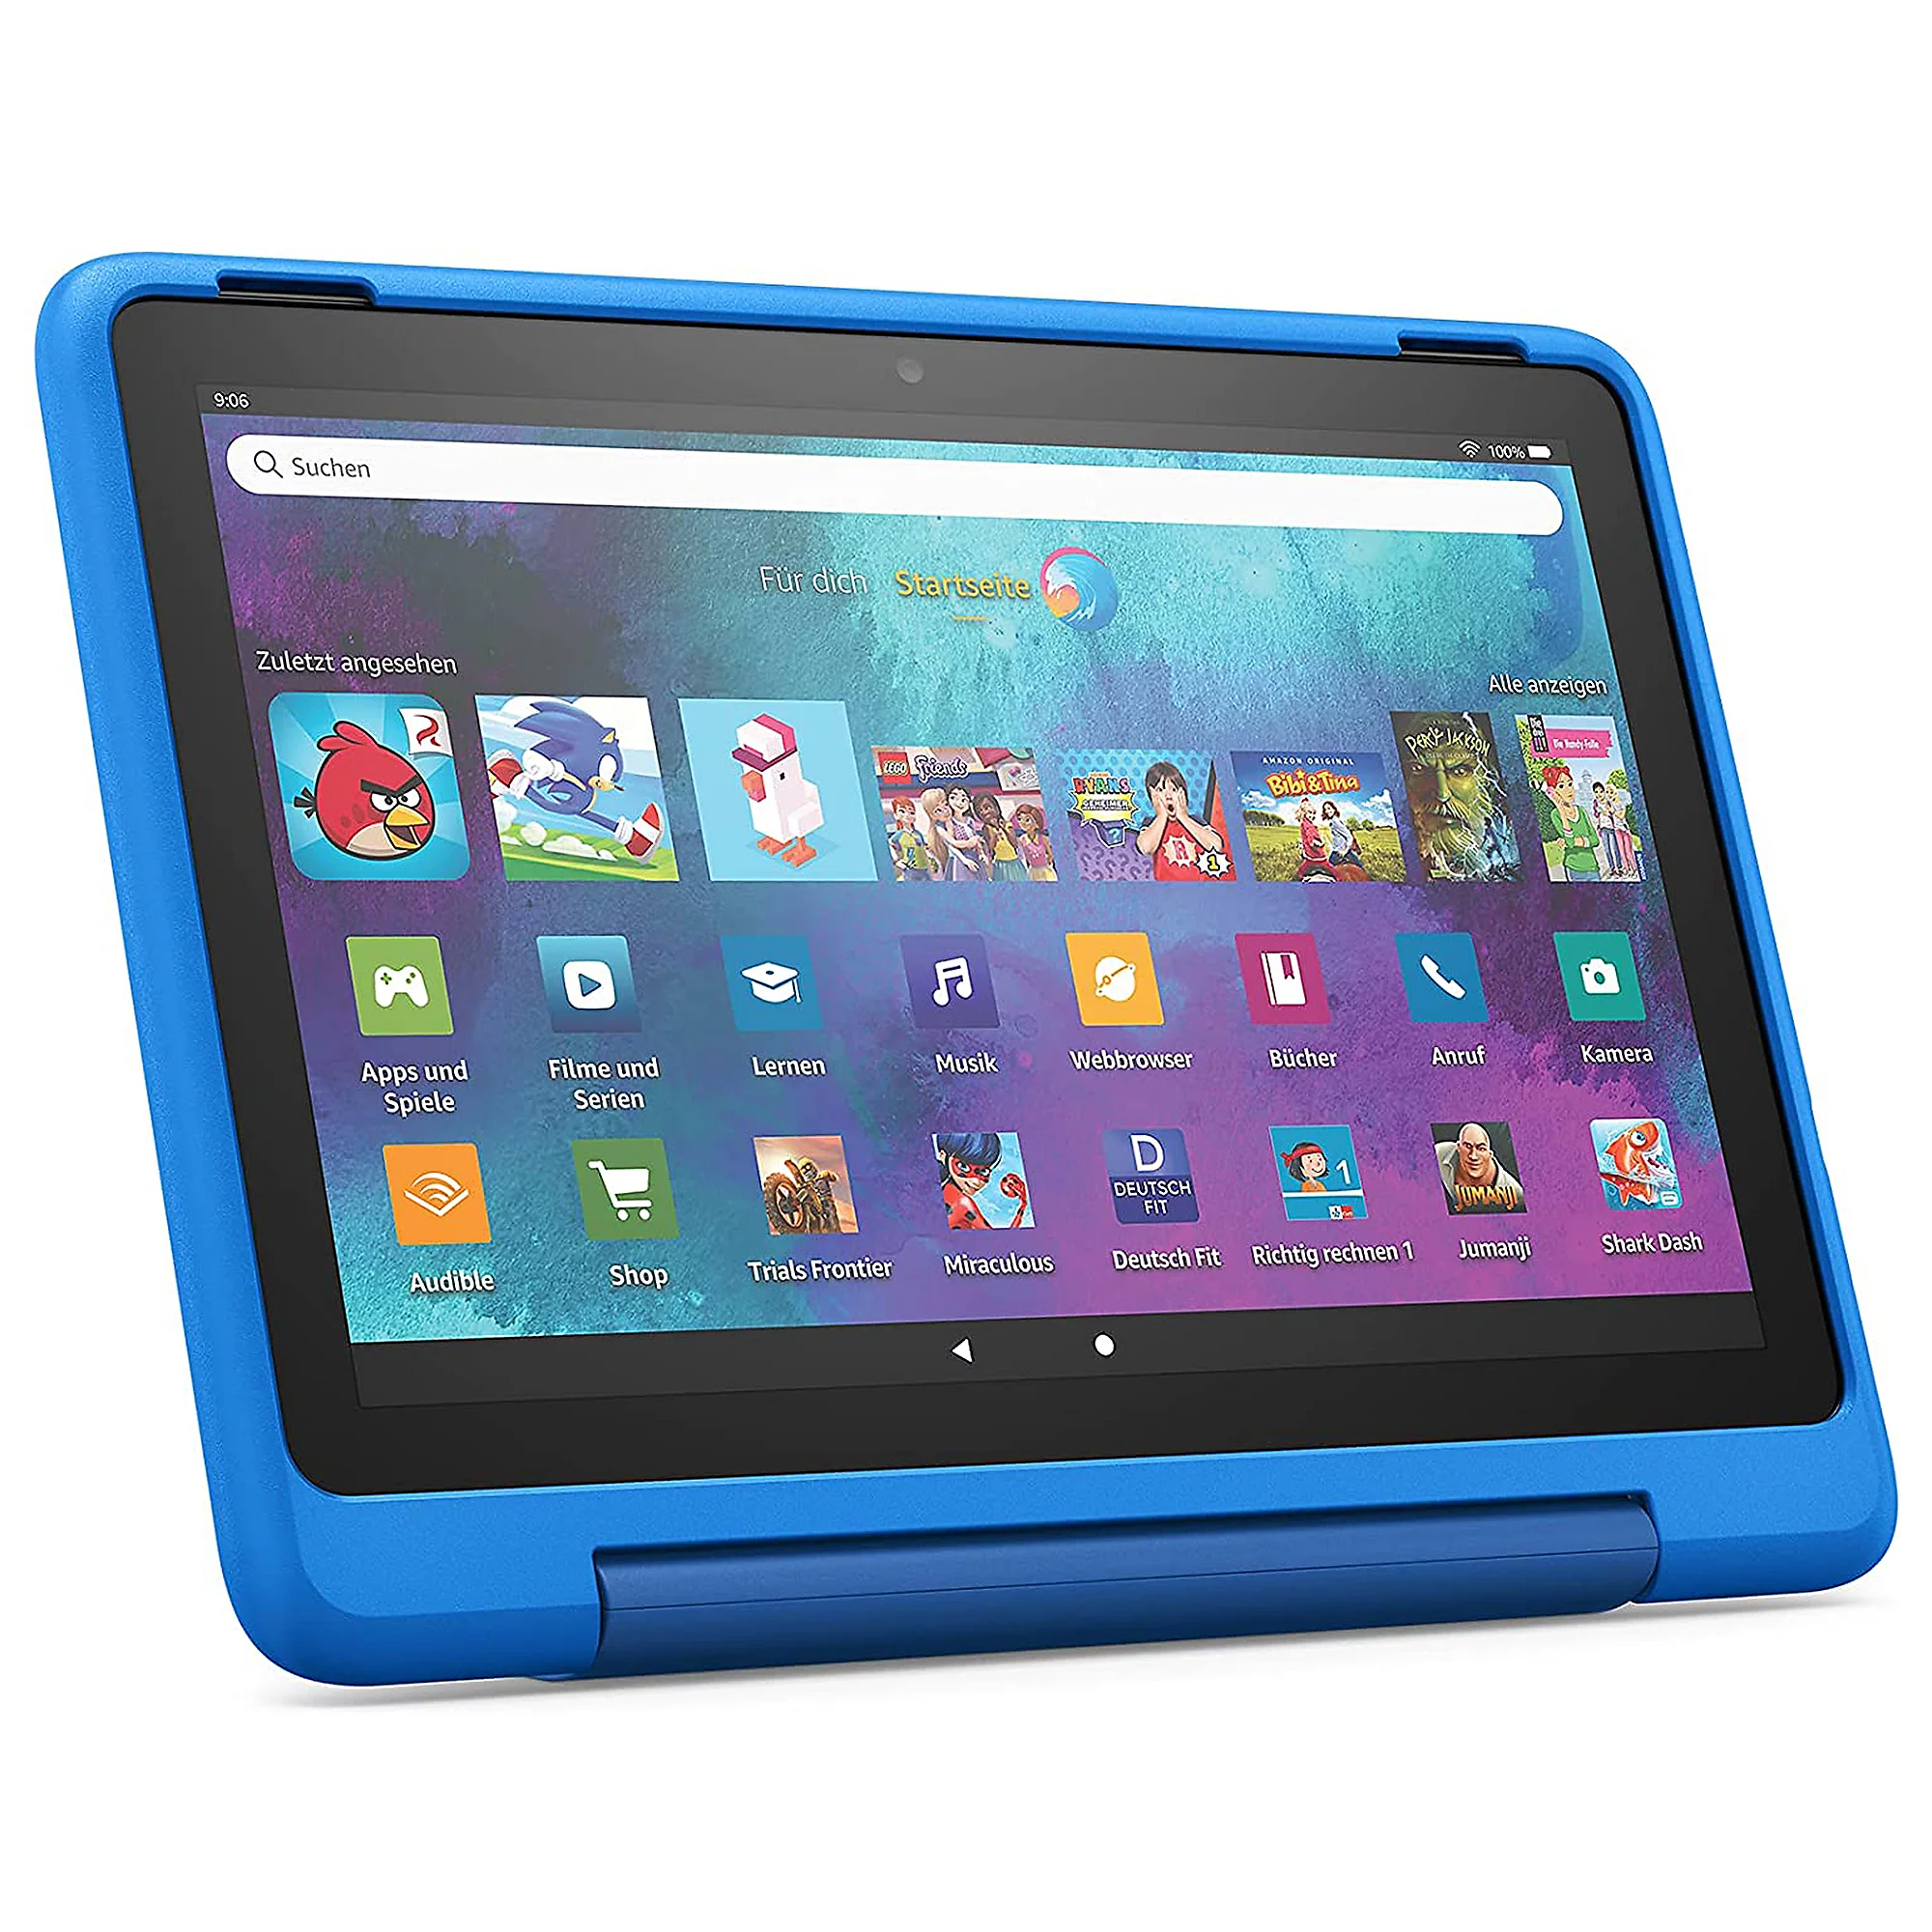 Bild zu [wieder da] Amazon Fire HD 10 Kids Pro Tablet mit Schutzhülle schon ab 140,94€ (Vergleich: 178,99€)